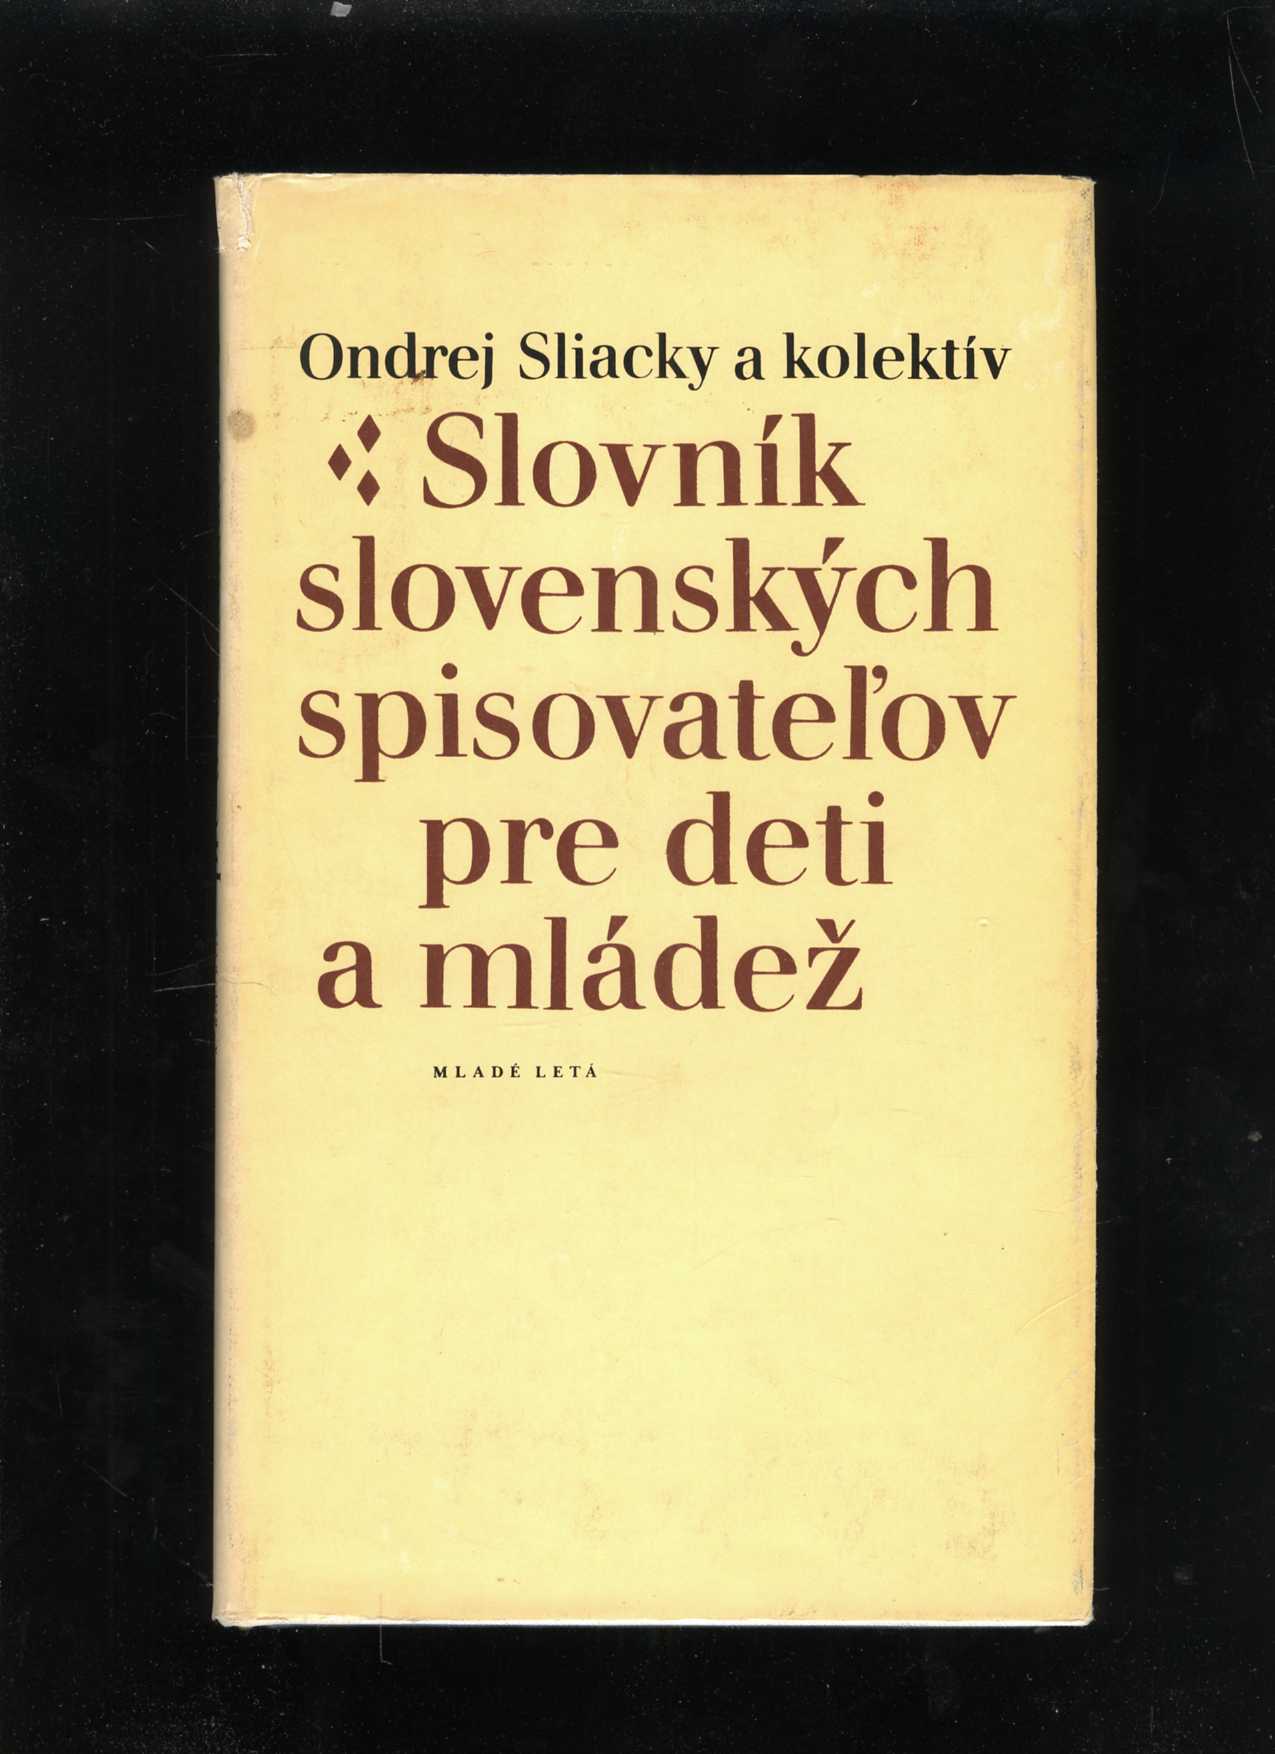 Slovník slovenských spisovateľov pre deti a mládež (Ondrej Sliacky)